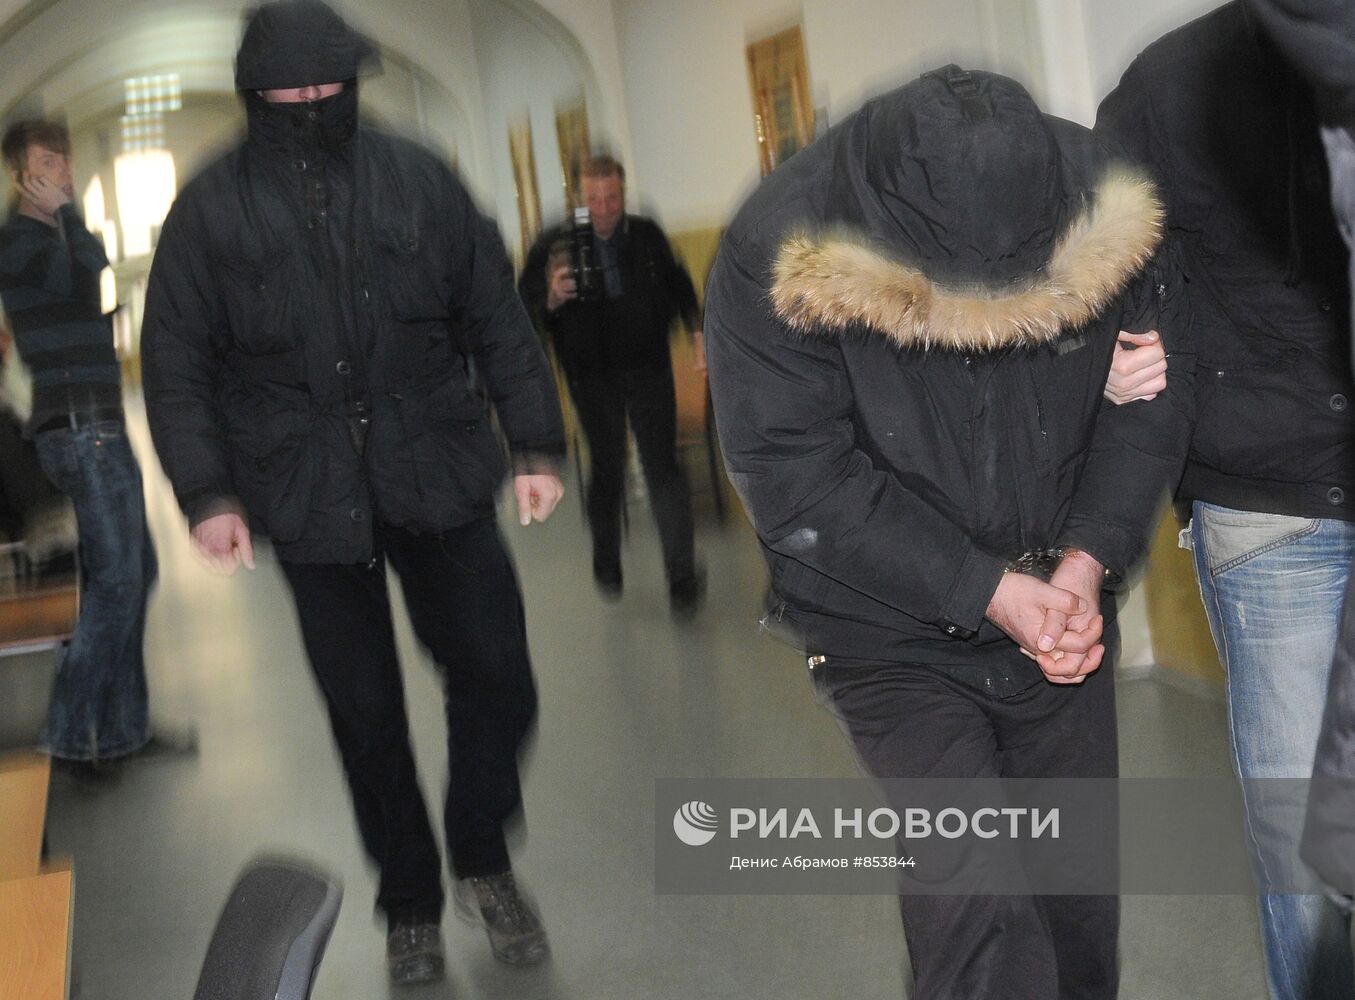 Басманный суд Москвы санкционировал арест Артура Магомедова